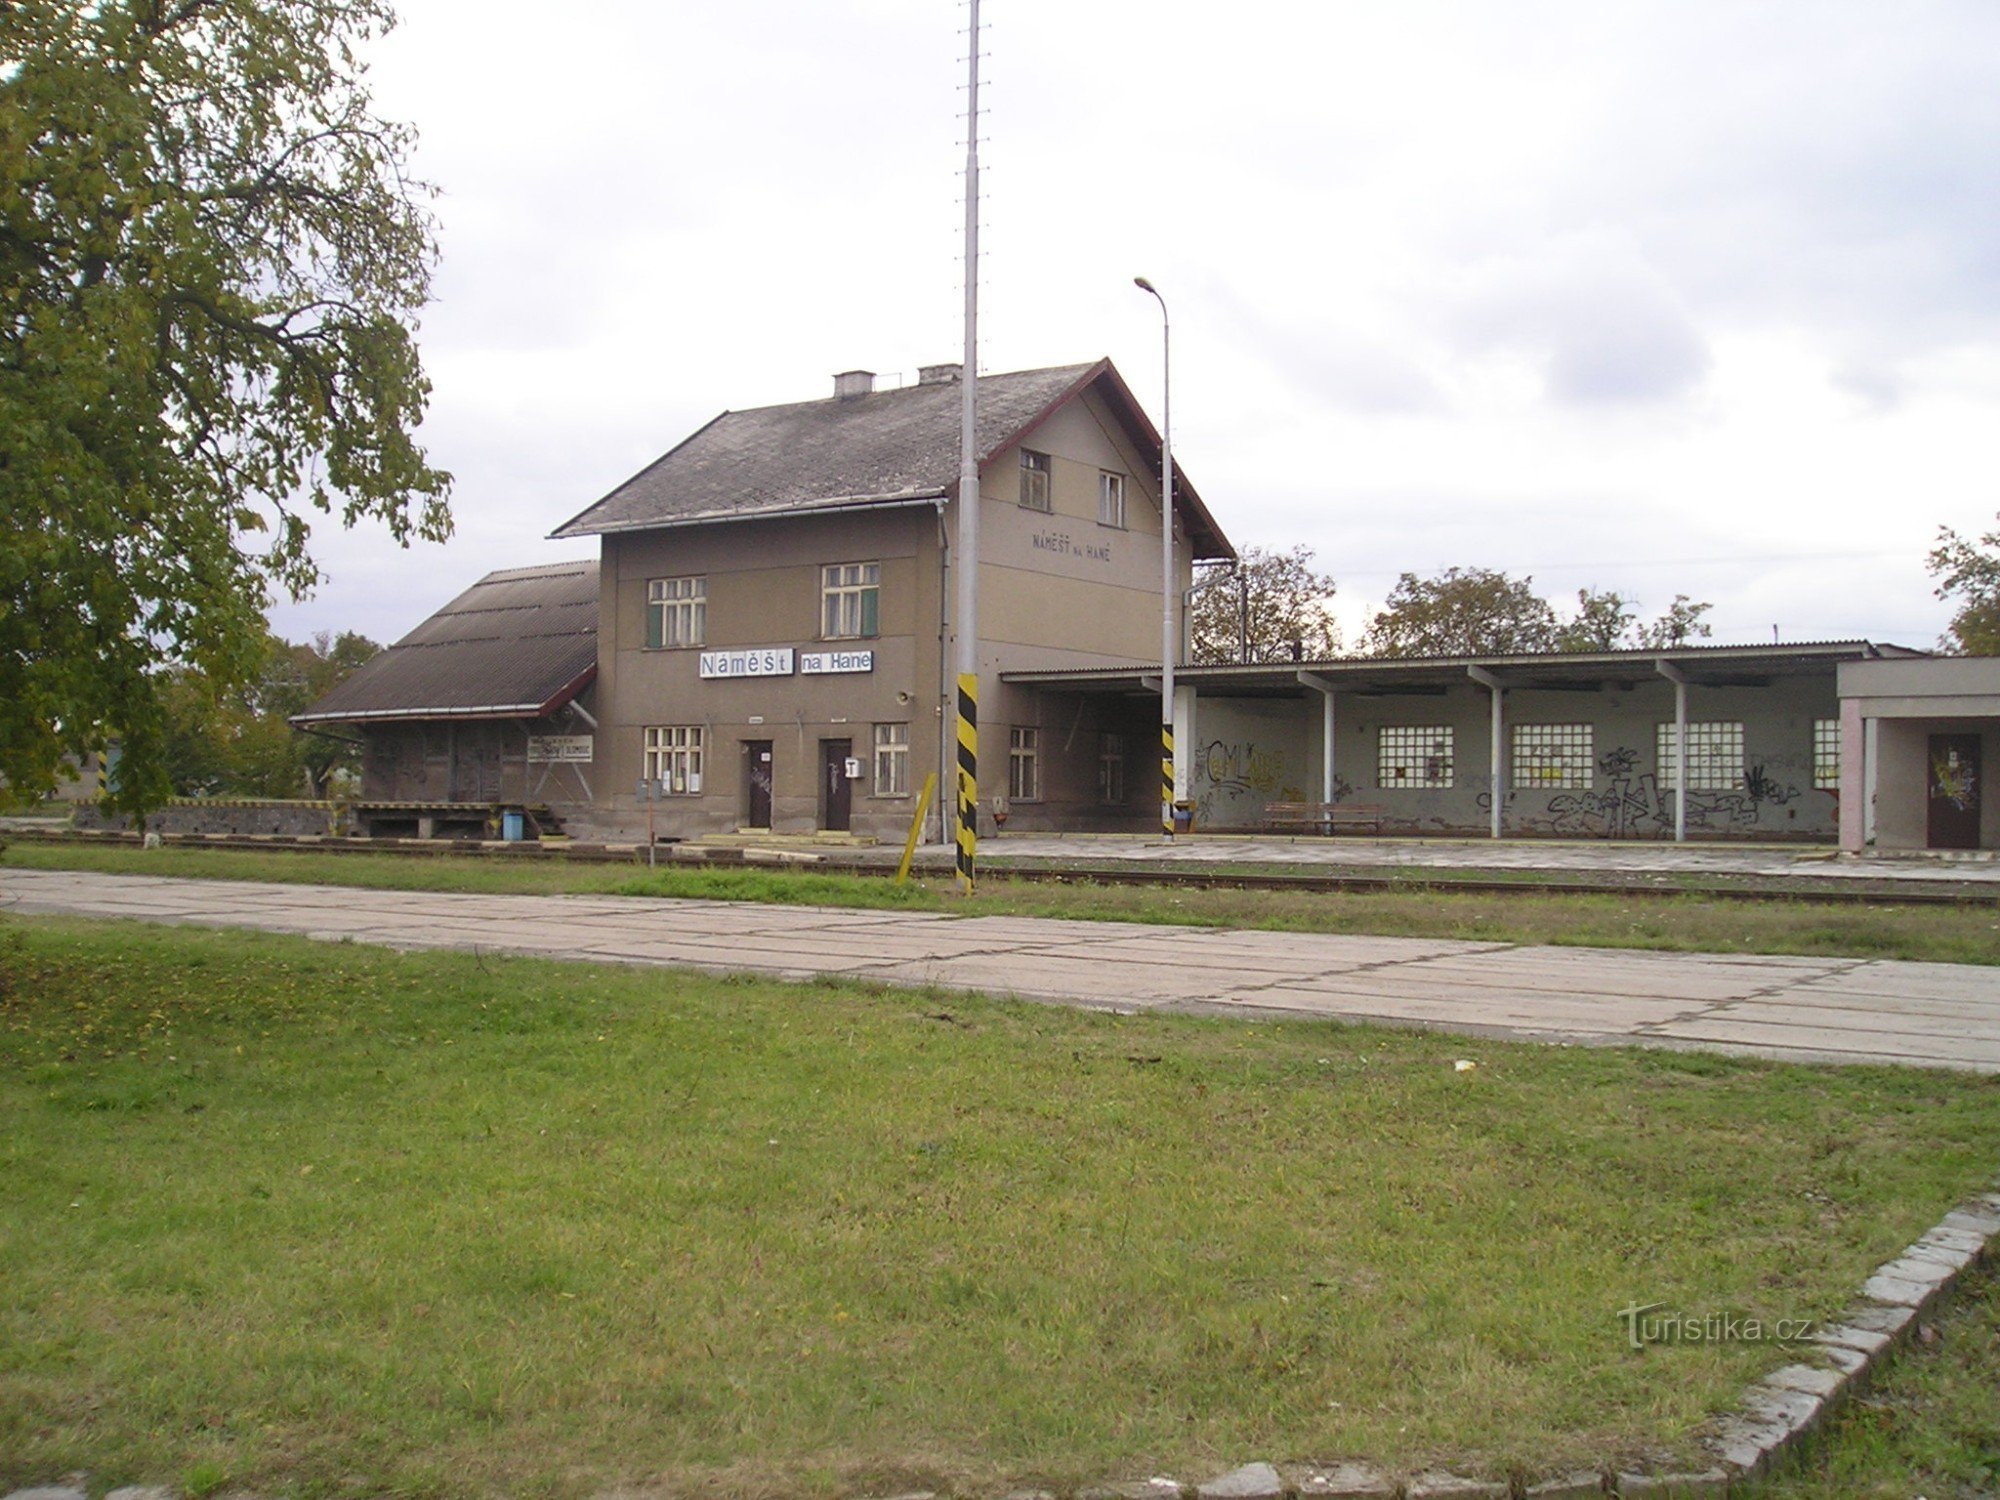 Σιδηροδρομικός σταθμός στο Náměšt na Hané